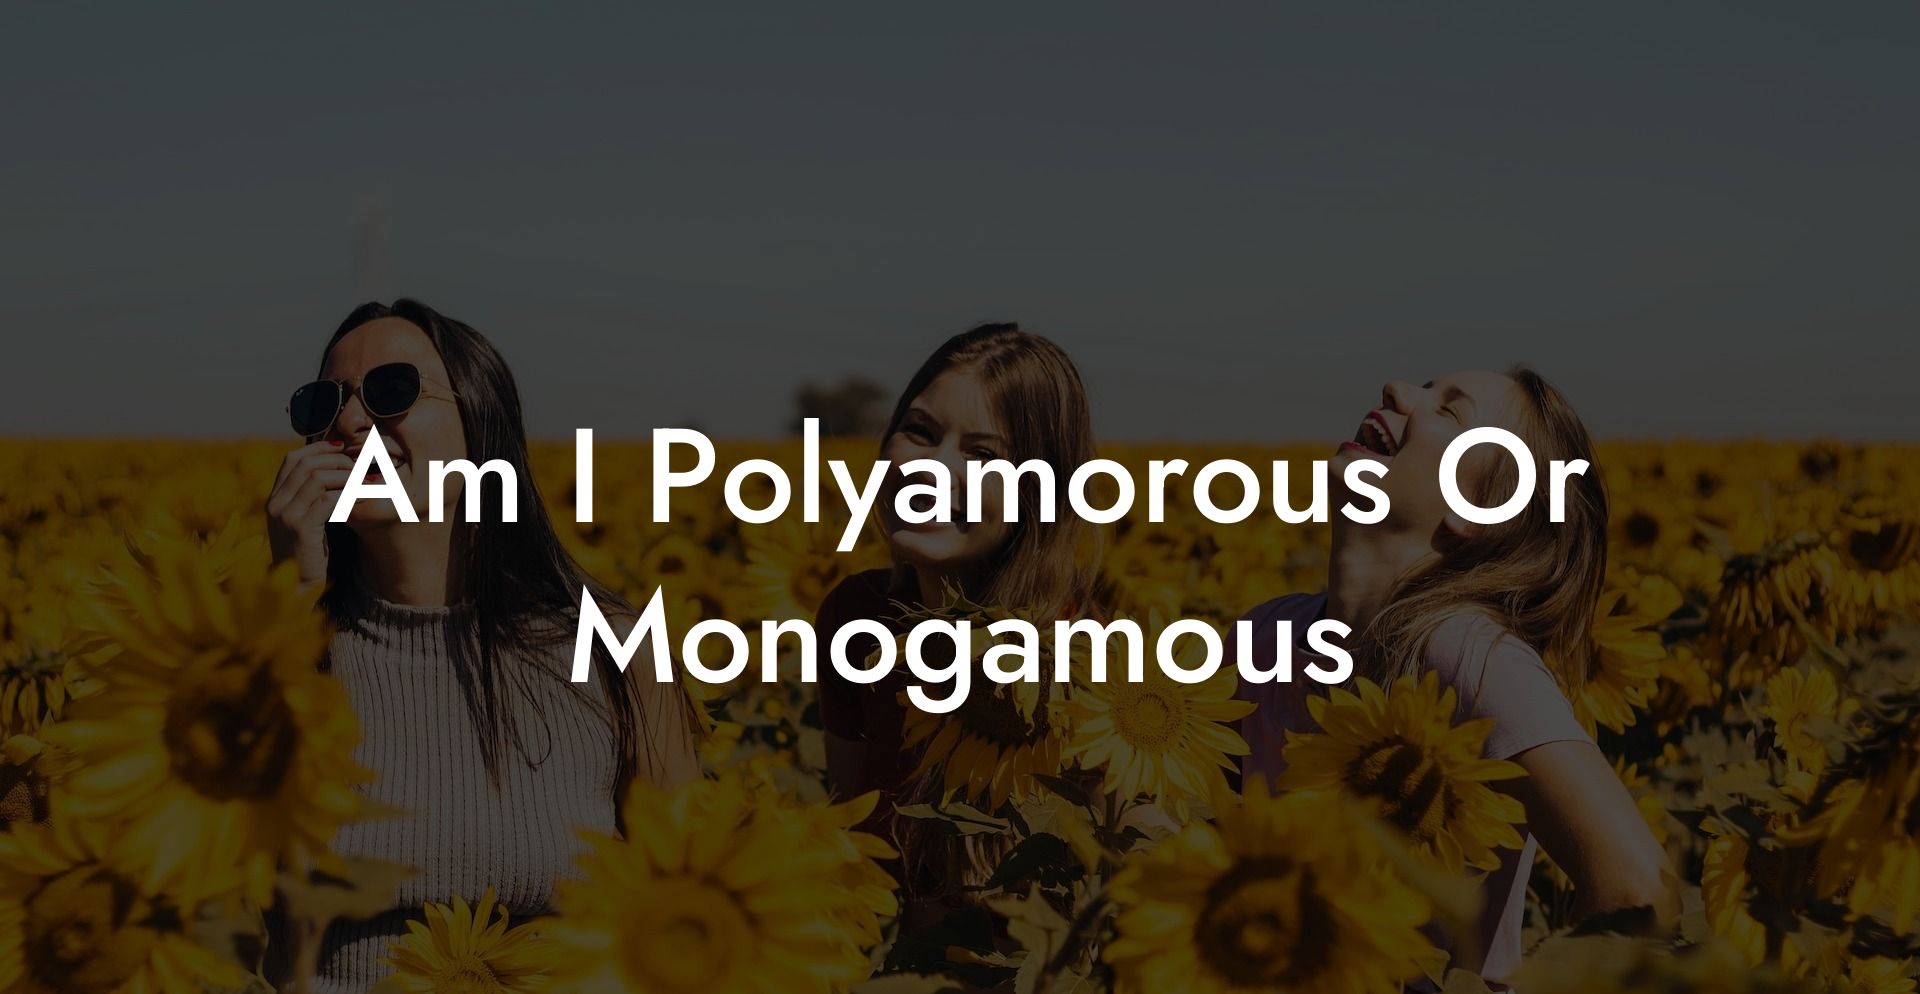 Am I Polyamorous Or Monogamous